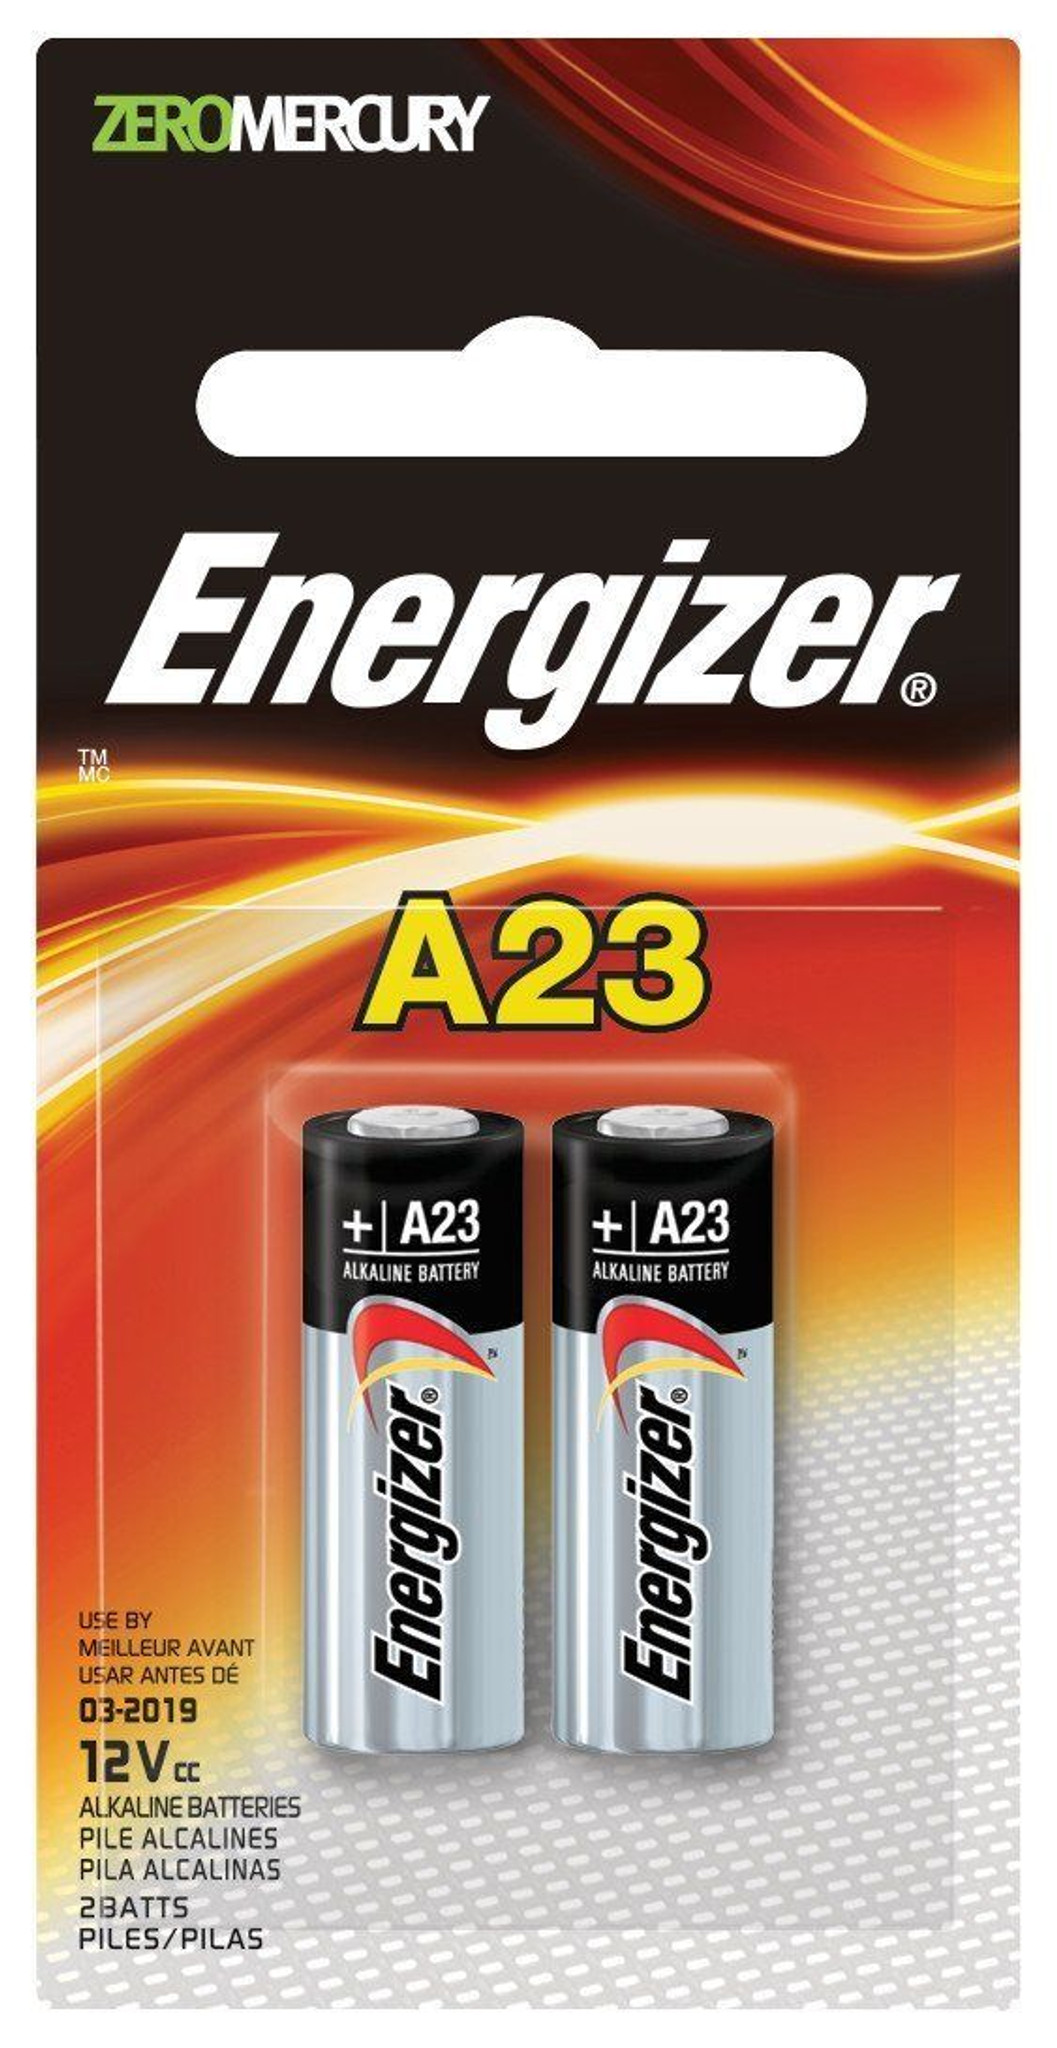 Alabama Terzijde Verouderd Energizer A23 Batterij, 12 Volt - 2 Stuks. Geautoriseerde verkoper